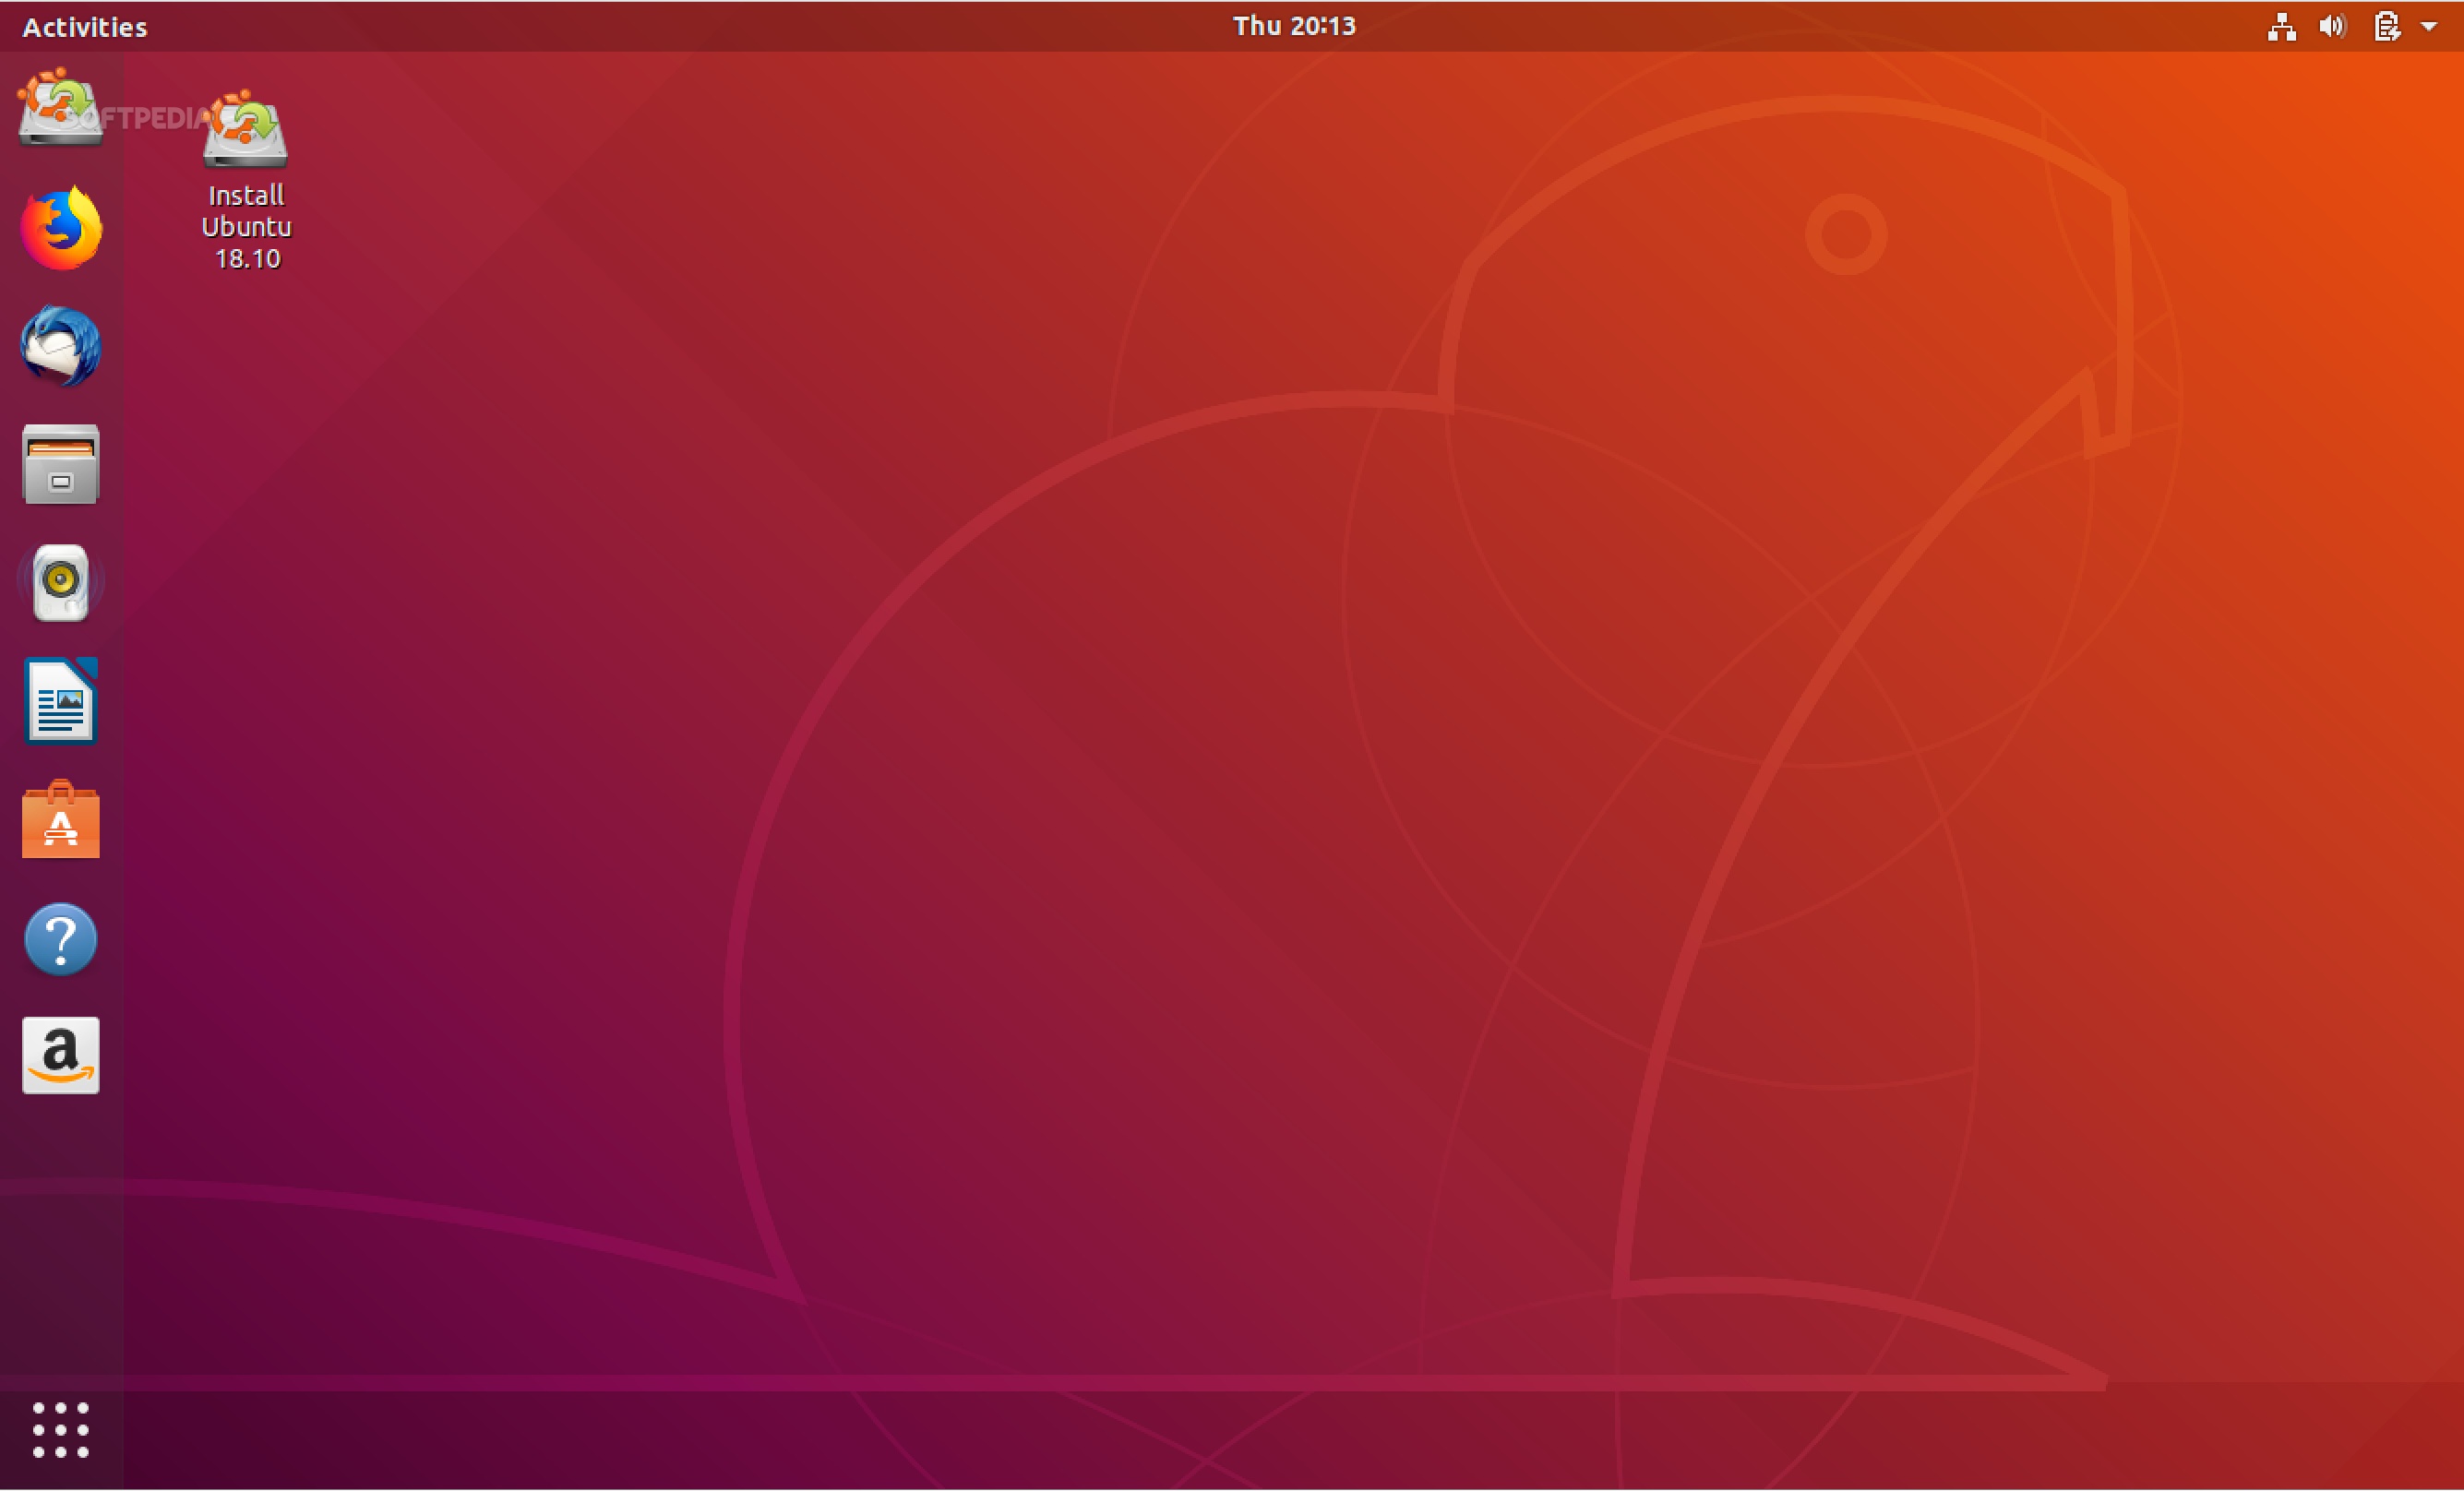 download ubuntu 18.10